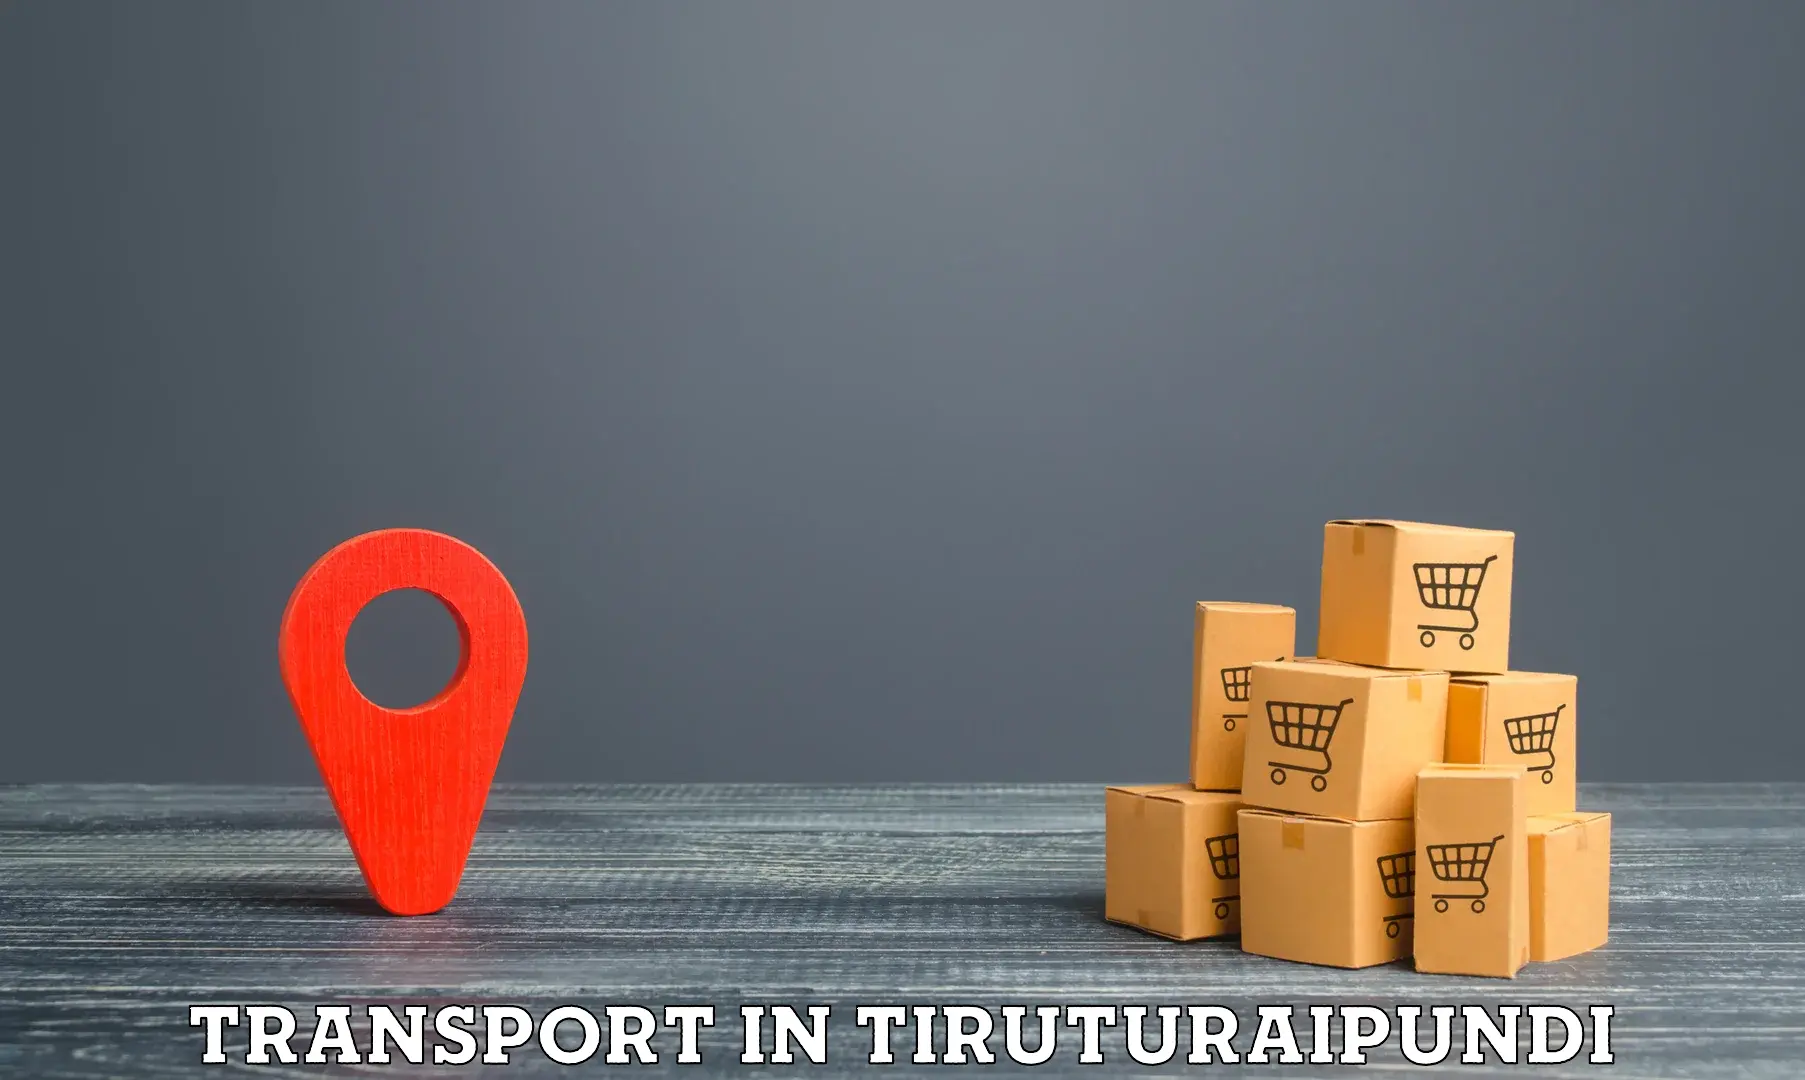 Transport in sharing in Tiruturaipundi